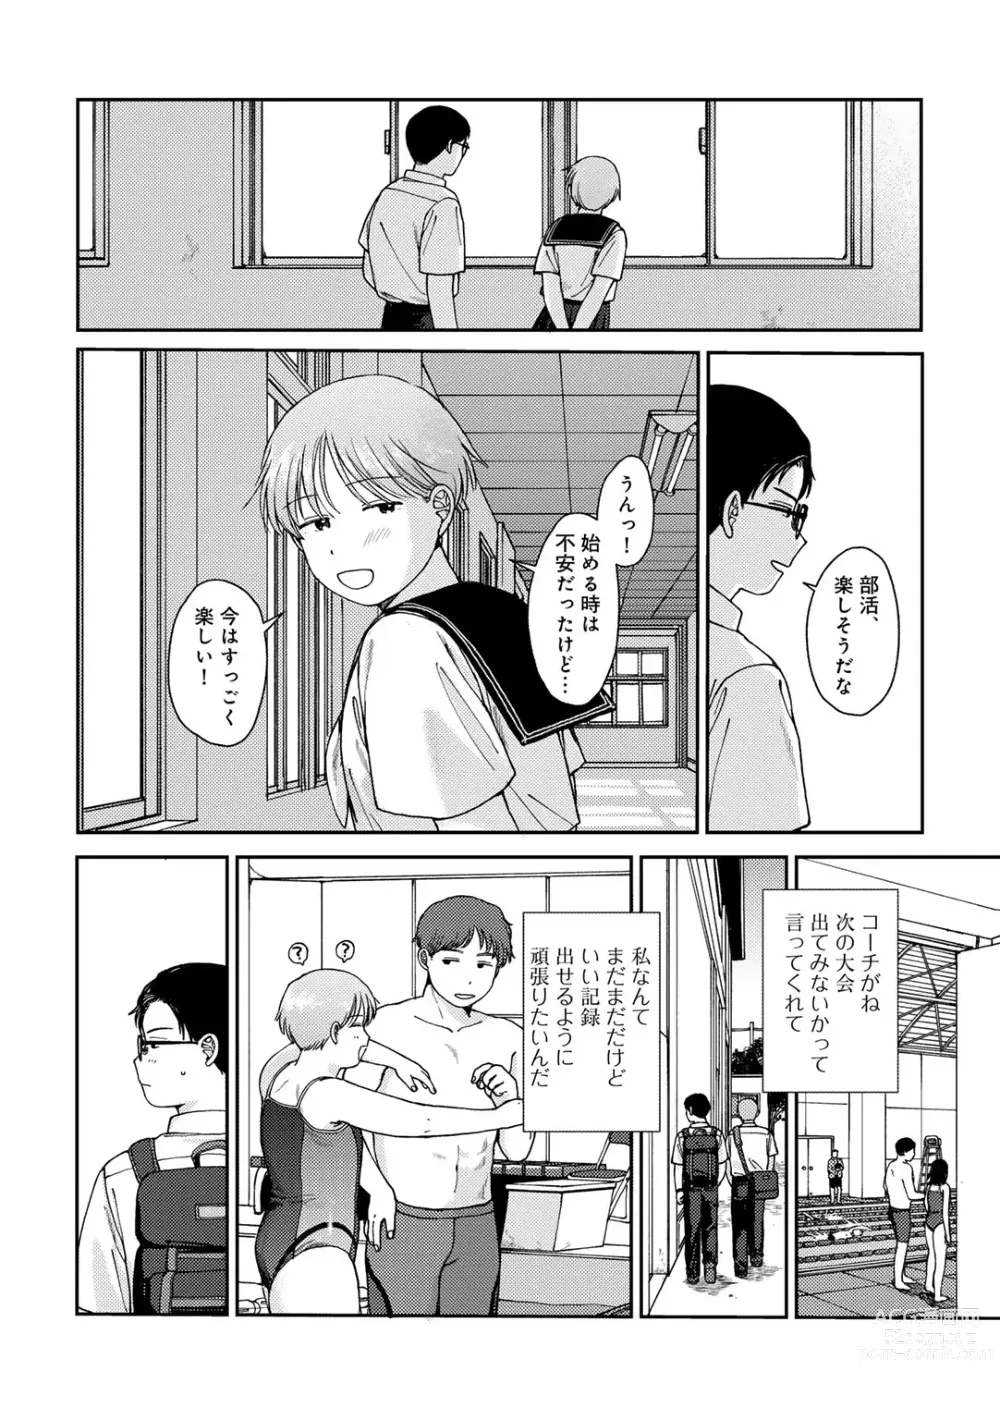 Page 6 of manga COMIC kisshug vol.4